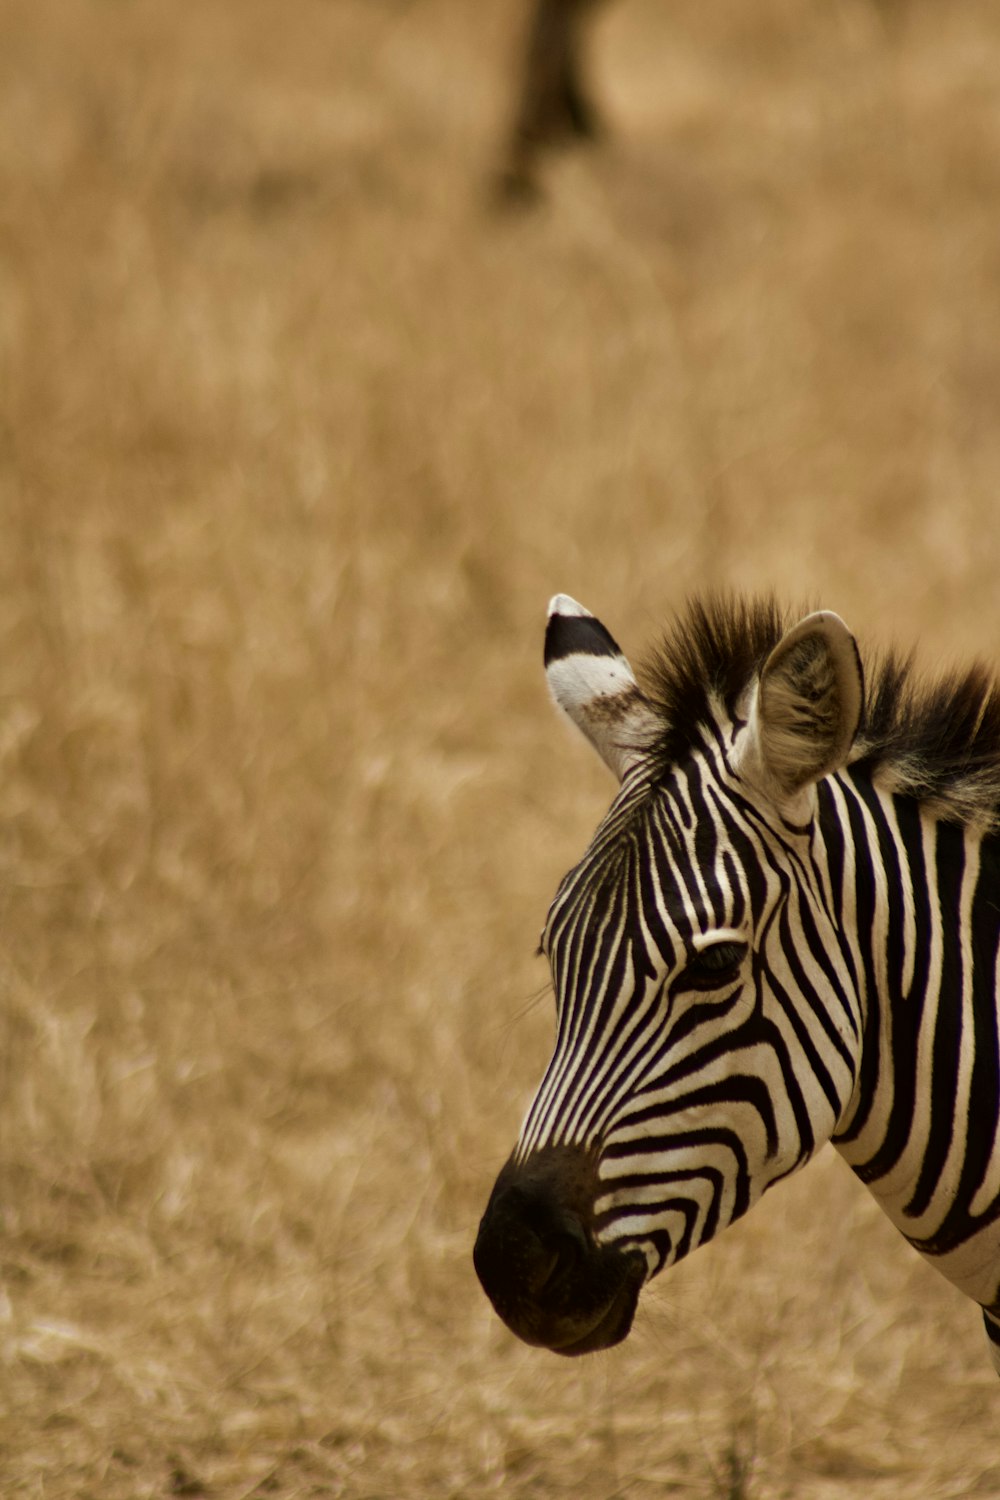 a zebra in a field